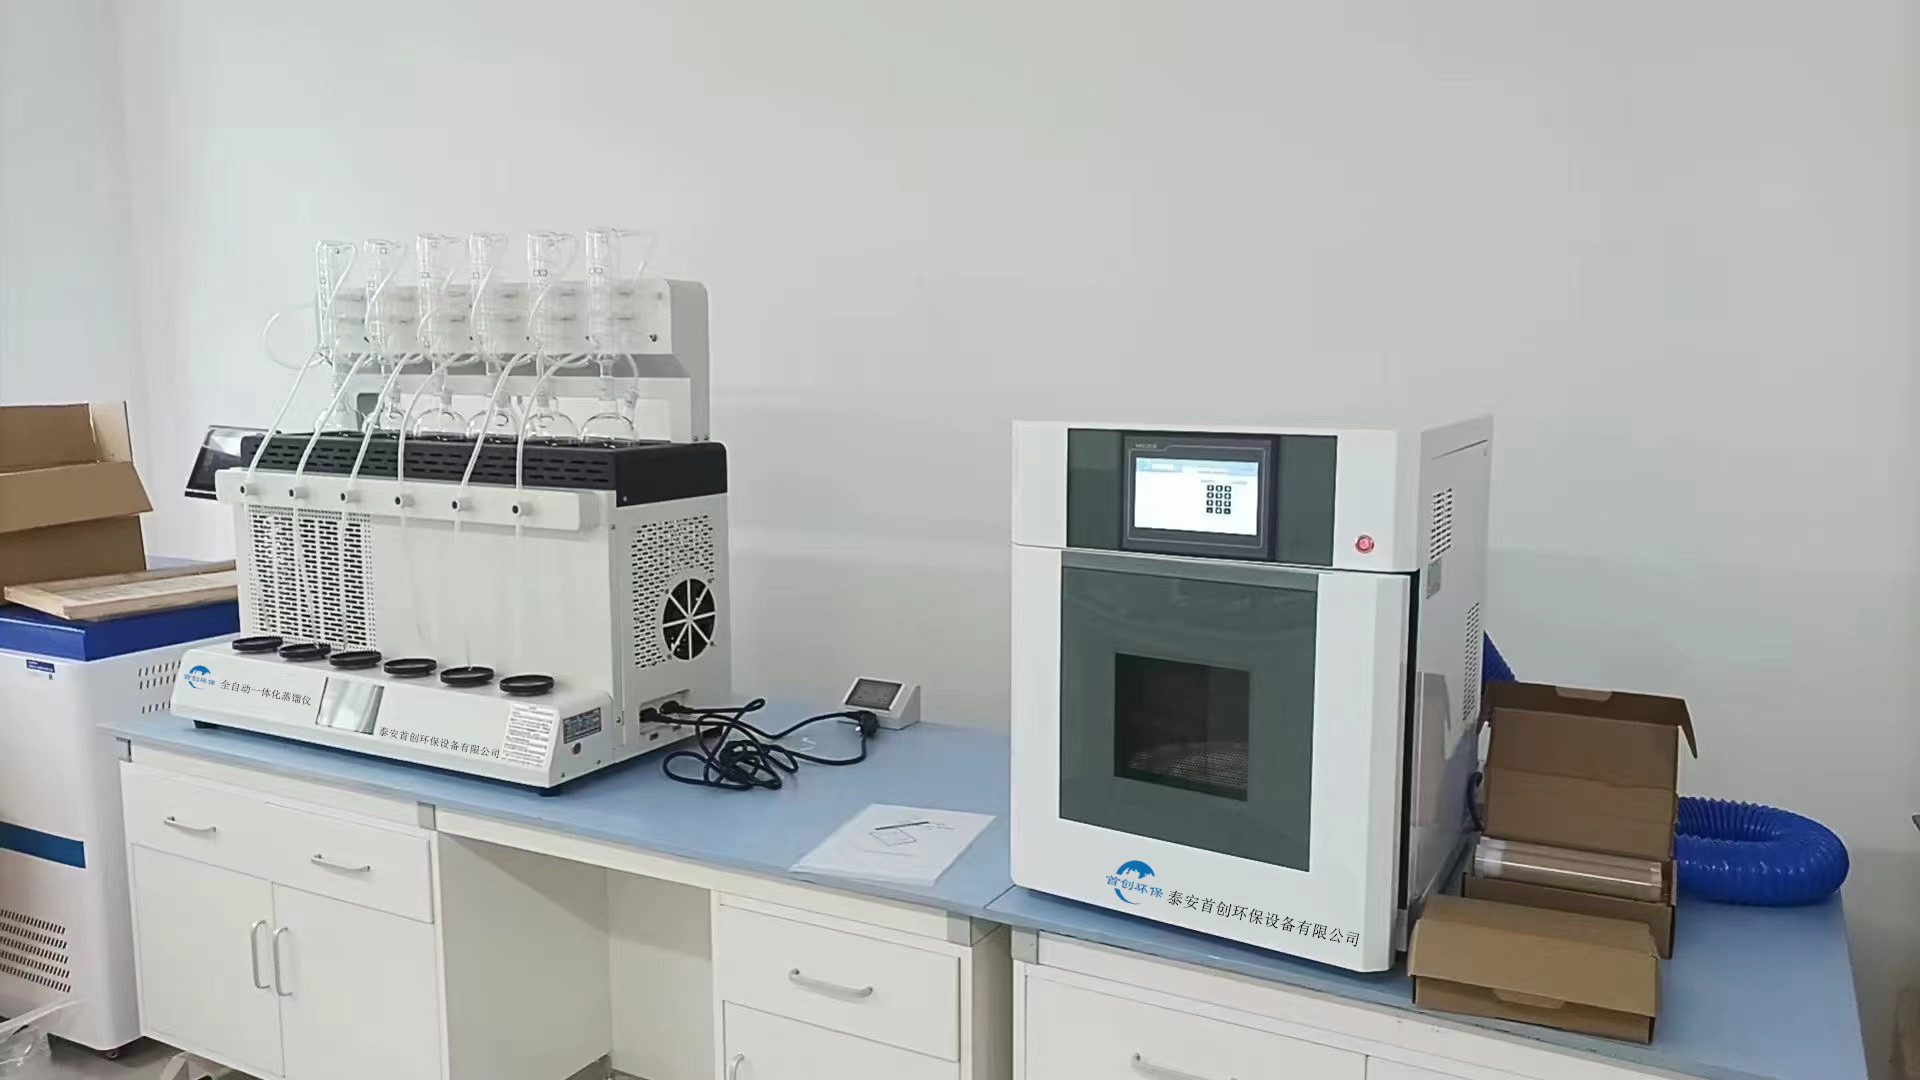 全自動一體化蒸餾儀及高通量智能微波消解儀安裝于第三方檢測公司